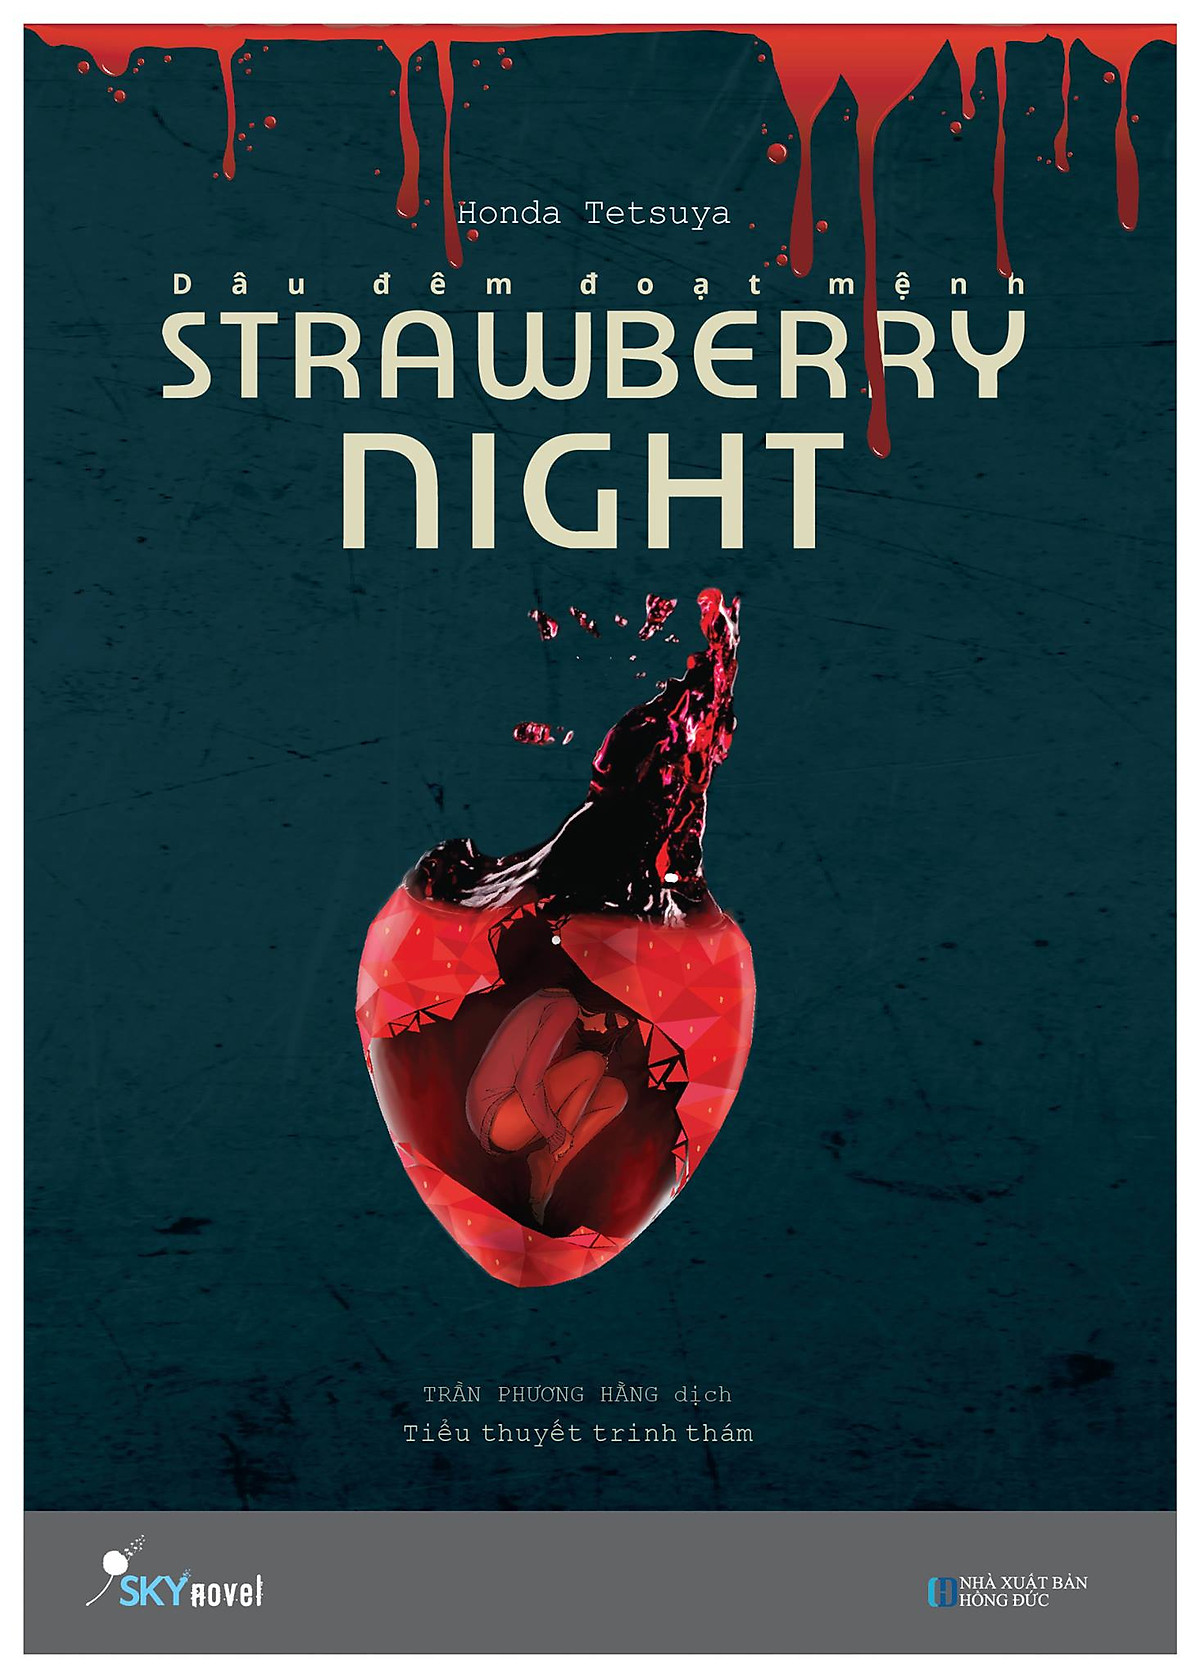 Strawberry Night - Dâu Đêm Đoạt Mệnh